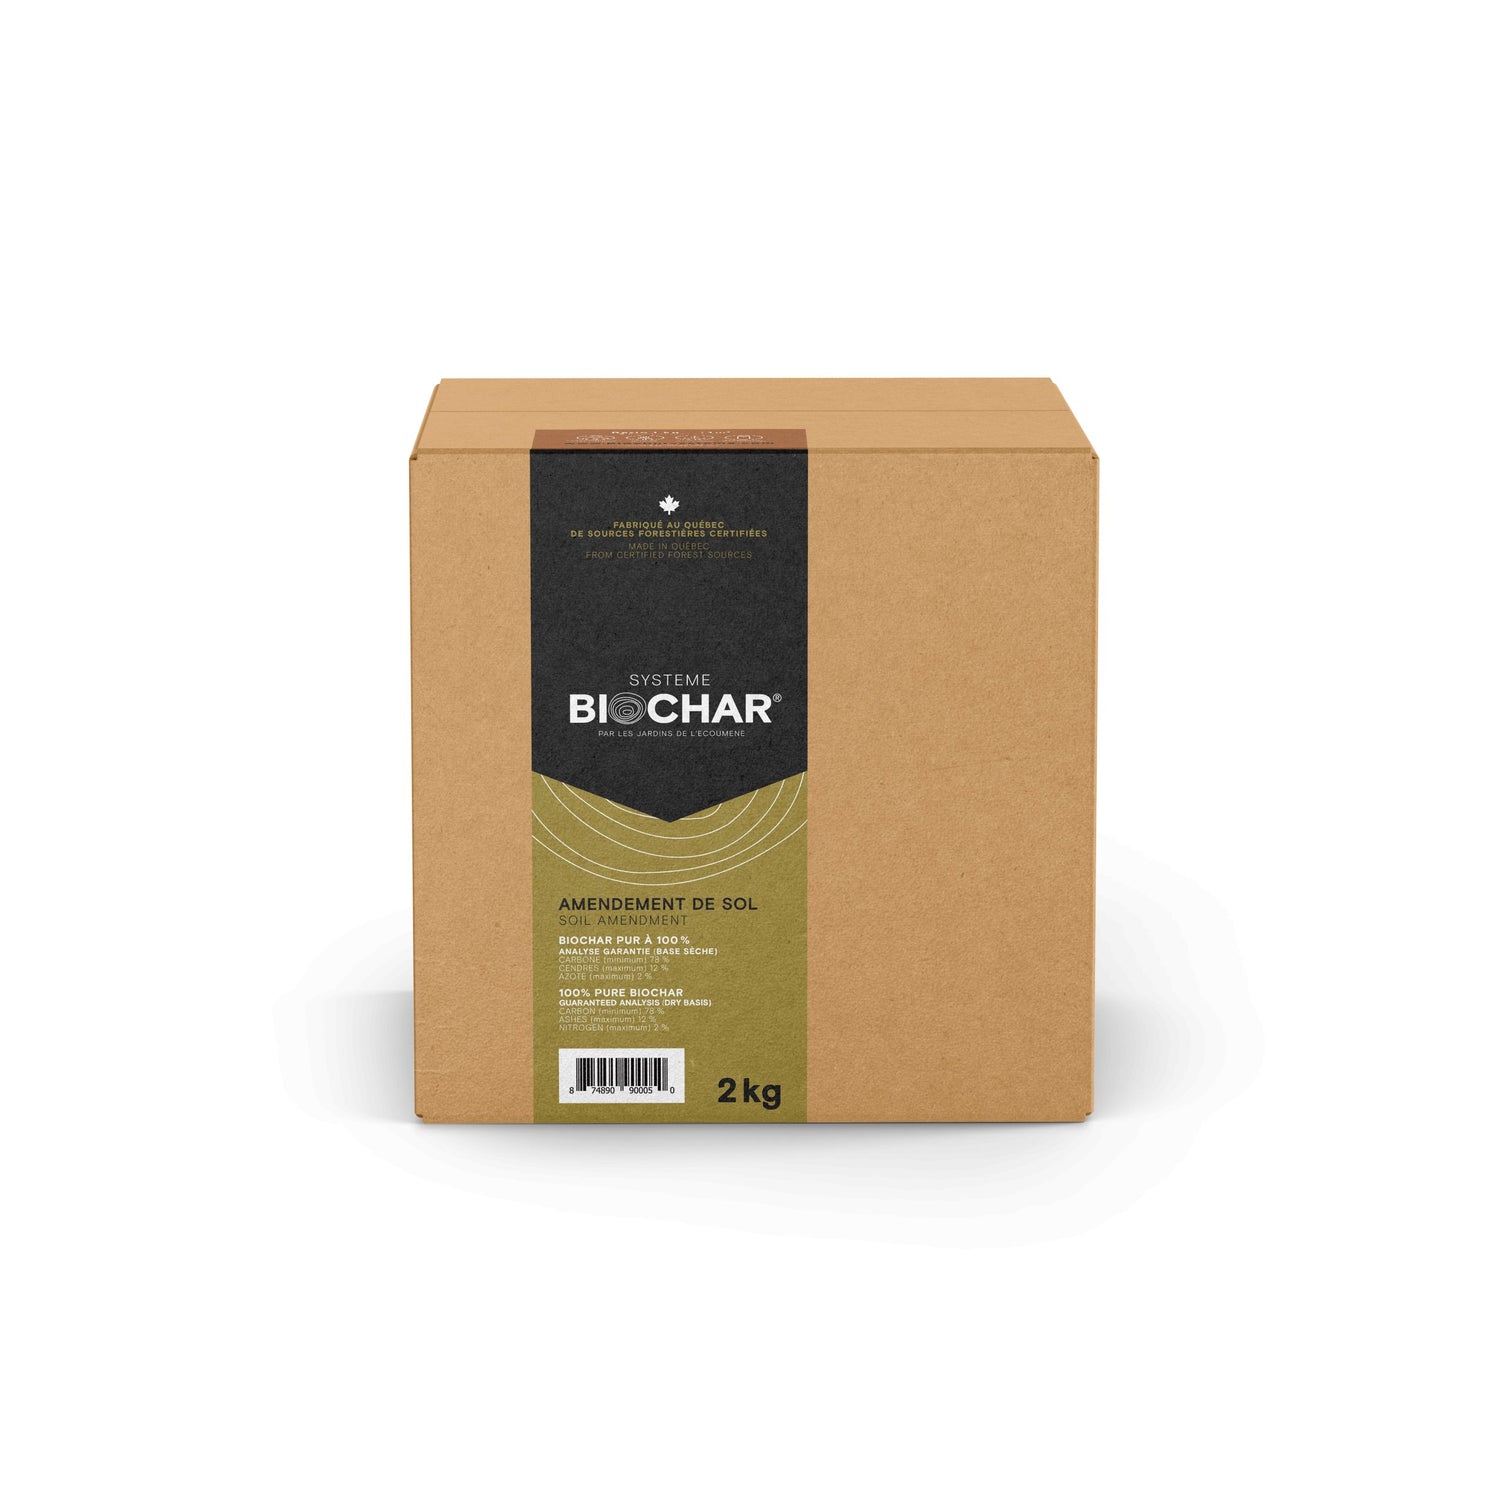 Boîte en carton carré de 2 kg de Biochar.